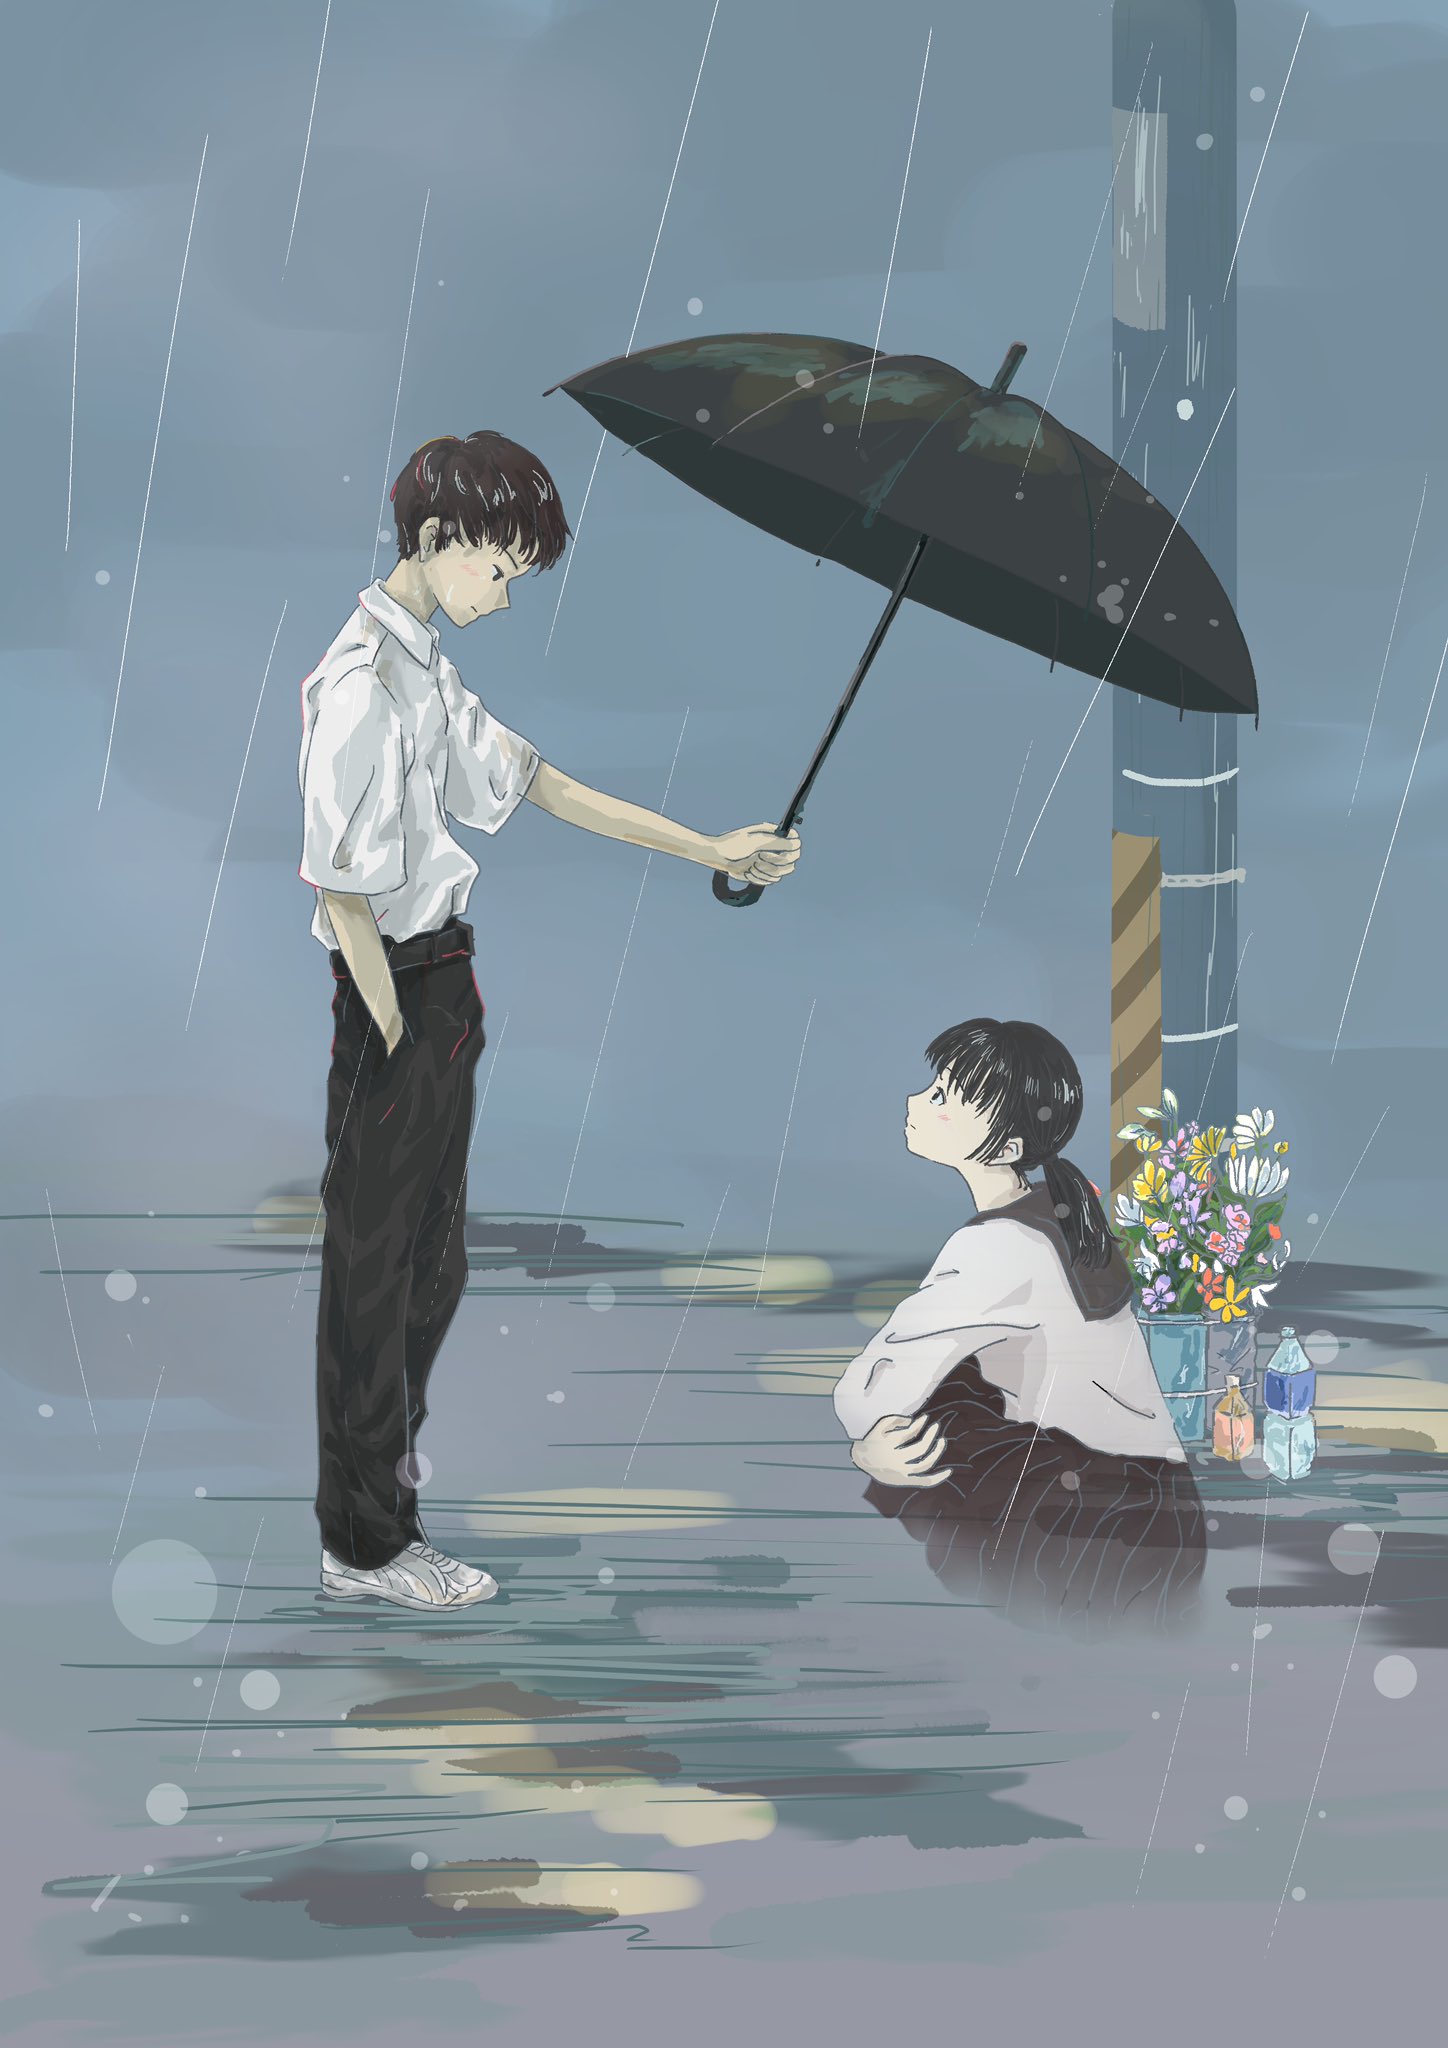 Парень держит зонт над девушкой